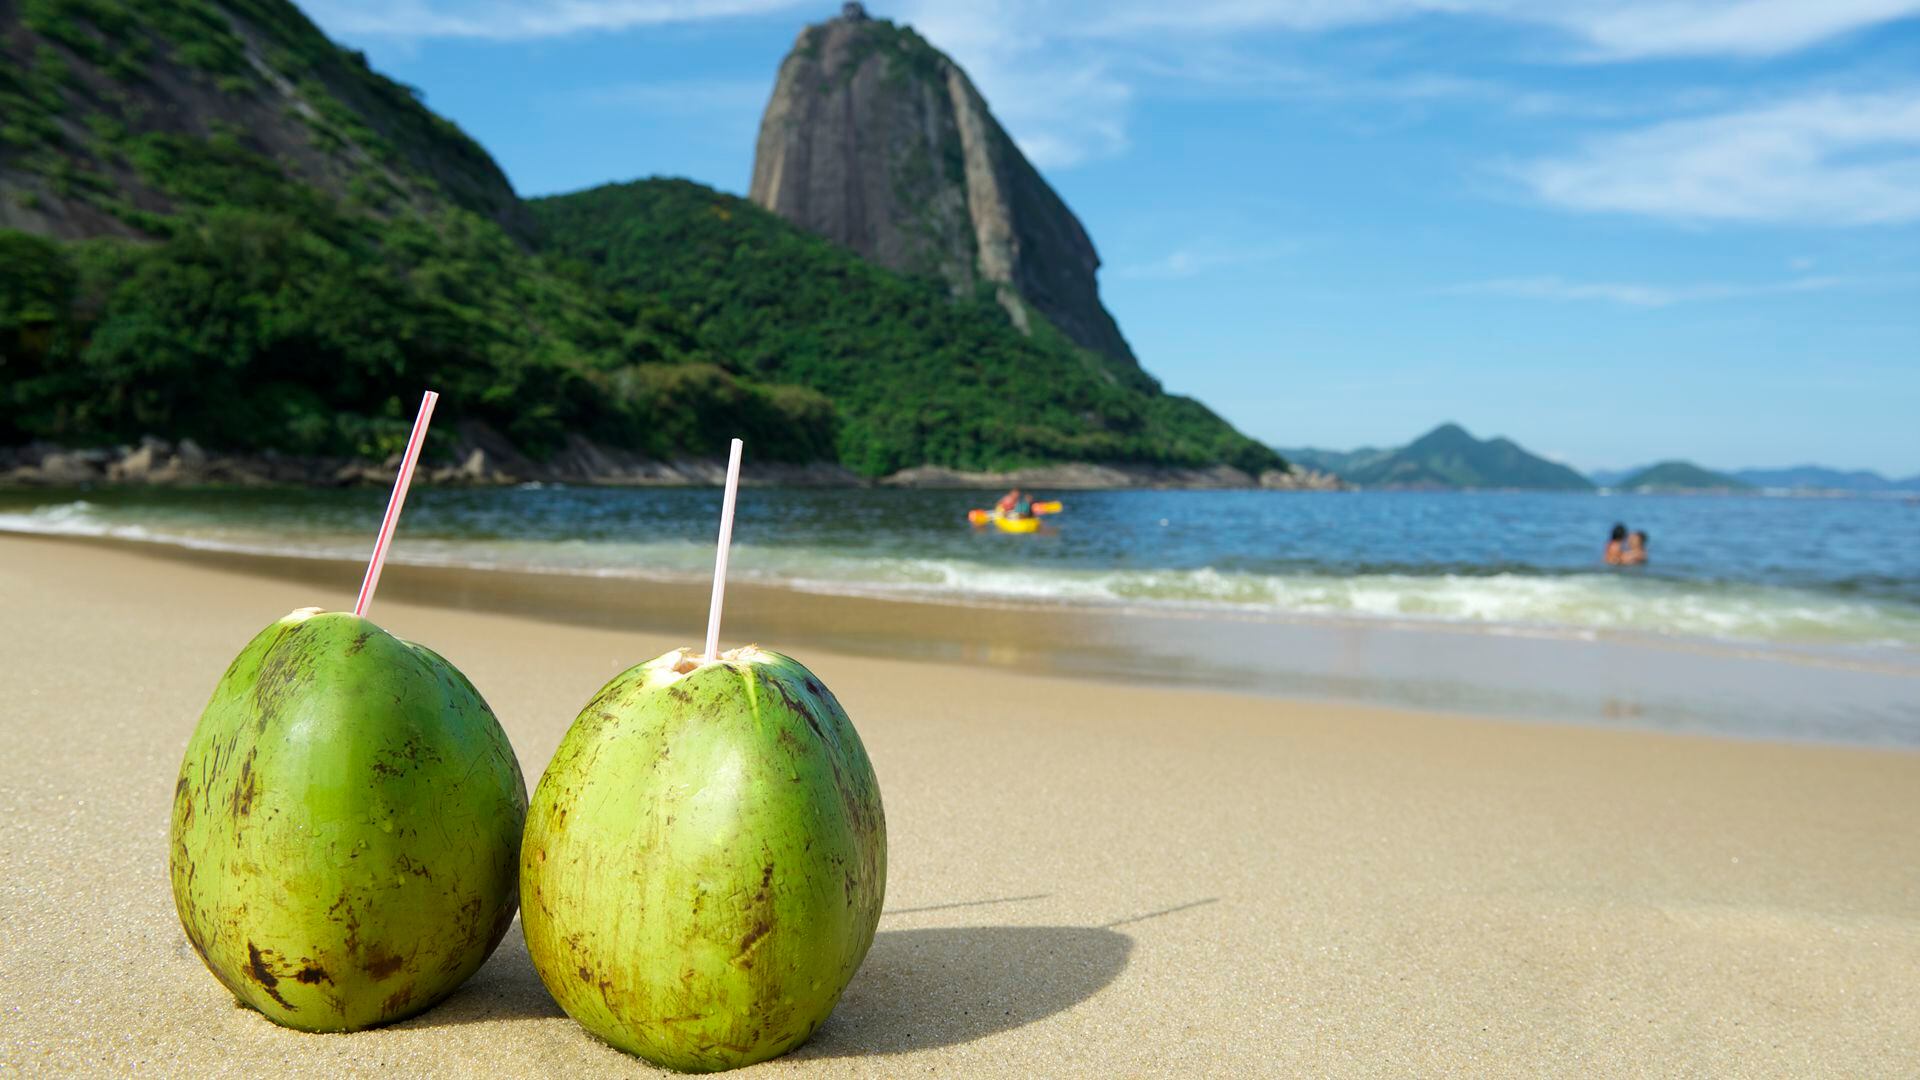 El coco es la fruta con más calorías. Ayuda a refrescar e hidratar de manera inmediata a la persona más sedienta. Tiene sustancias nutritivas como el hierro, potasio y sales minerales (Getty)